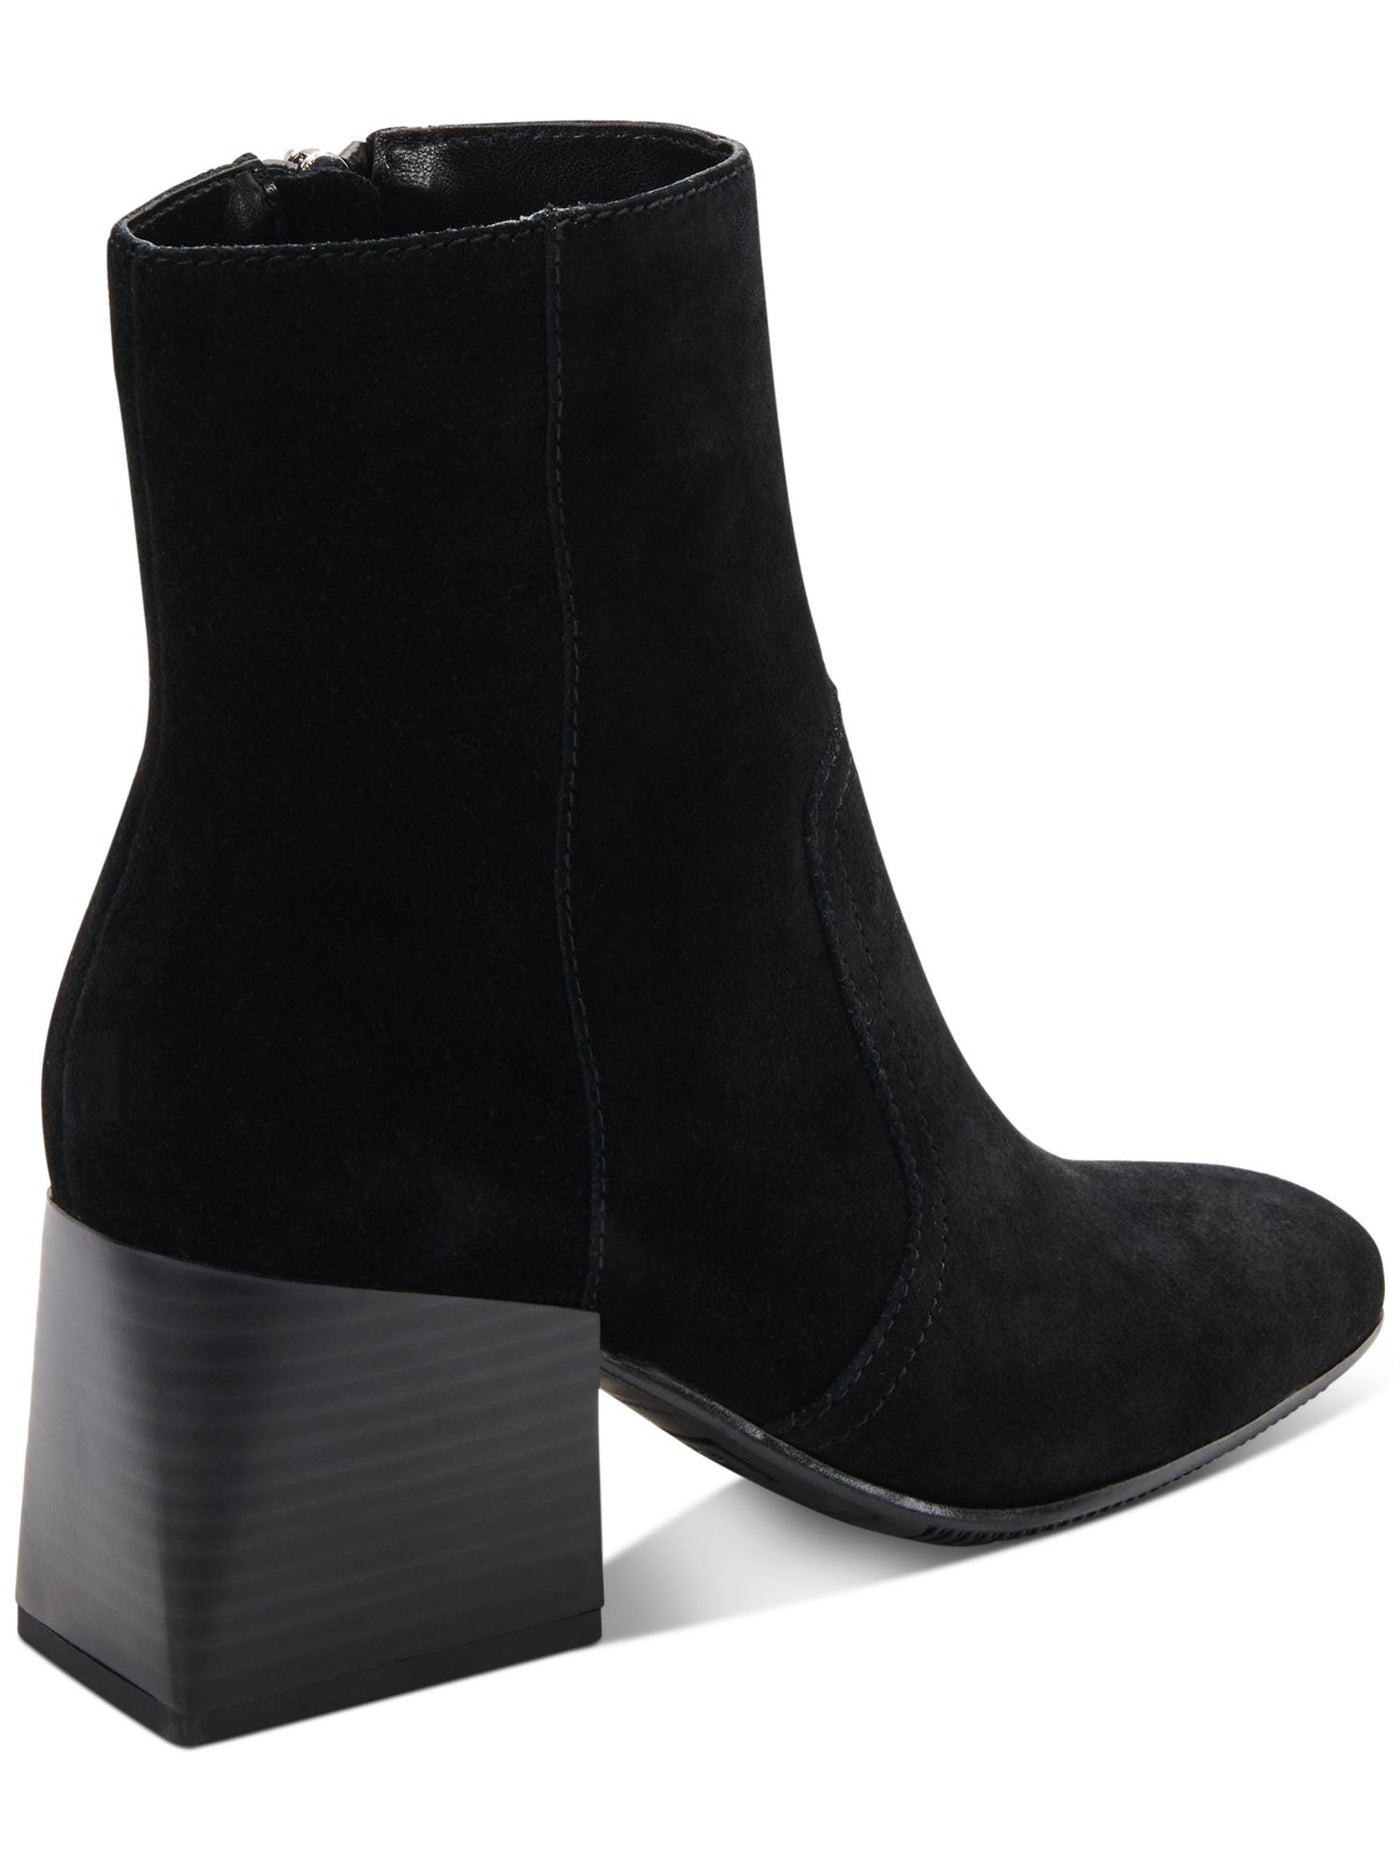 AQUA COLLEGE Womens Black Waterproof Tora Round Toe Block Heel Zip-Up Heeled Boots 7 M